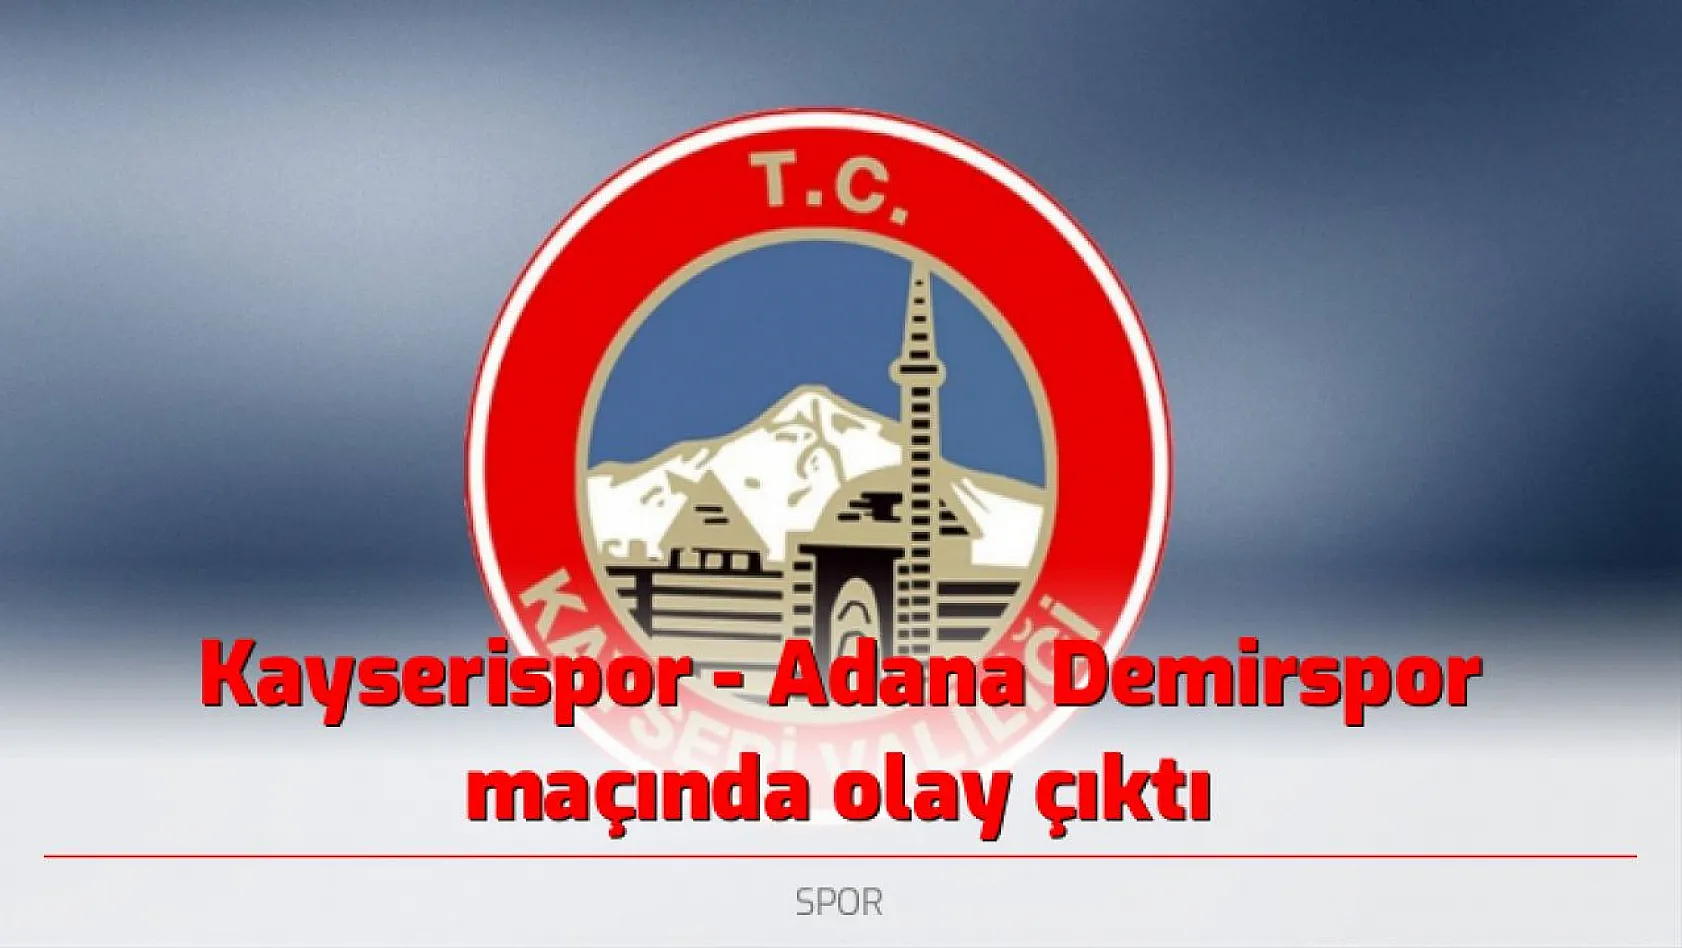 Kayserispor - Adana Demirspor maçında olay çıktı